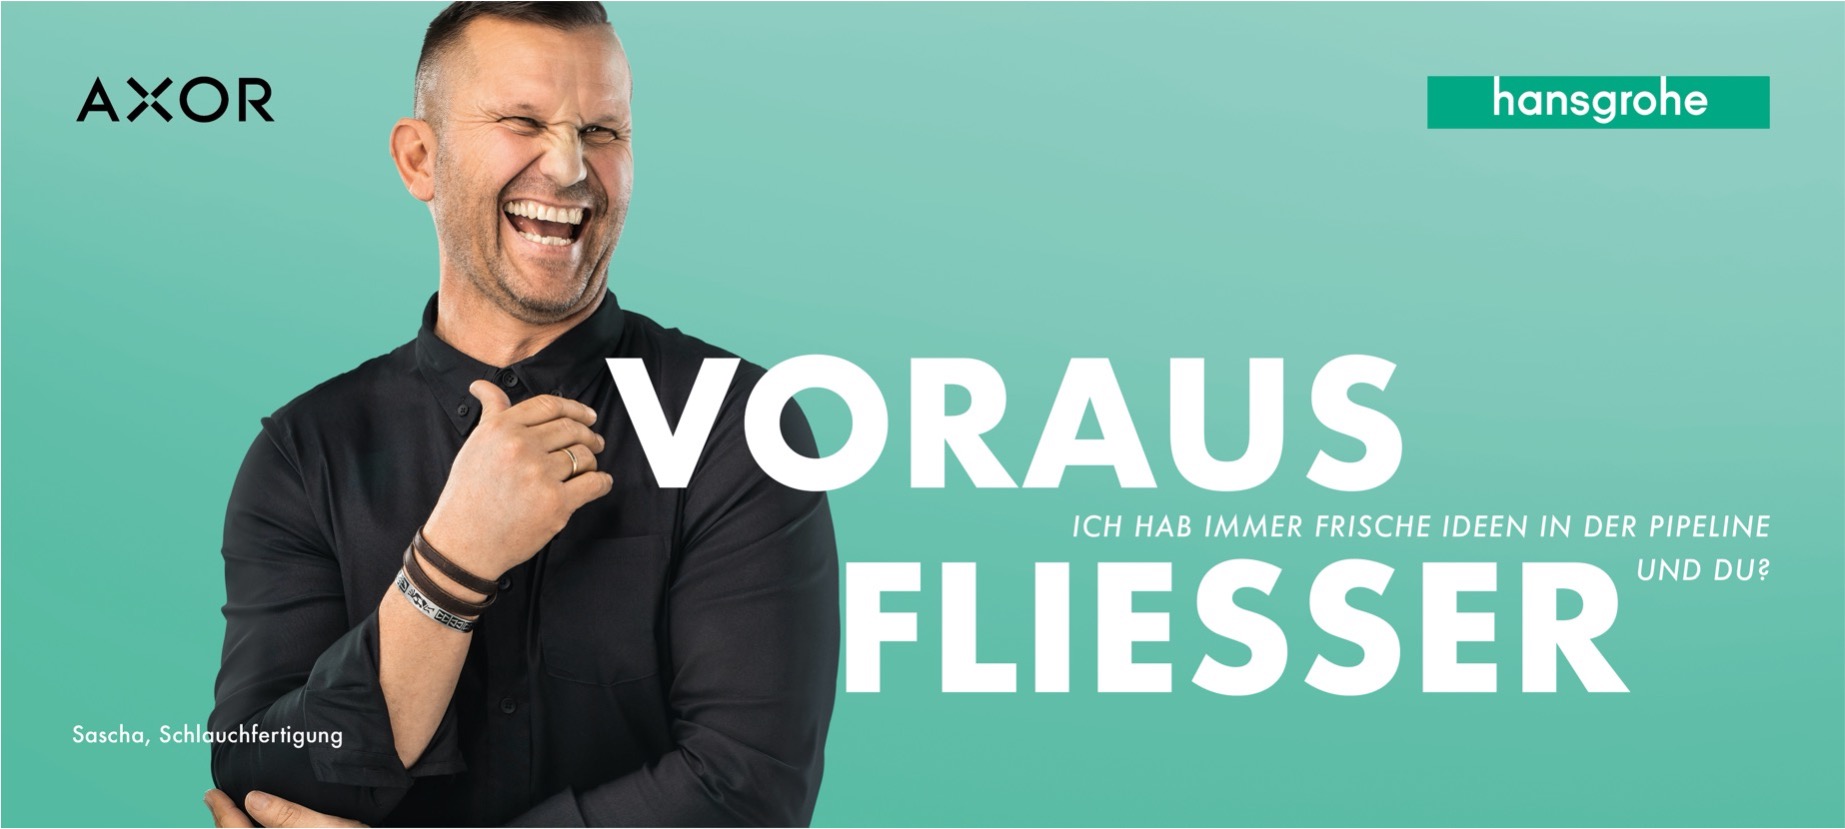 teufels Personalmarketing Kampagne für Hansgrohe